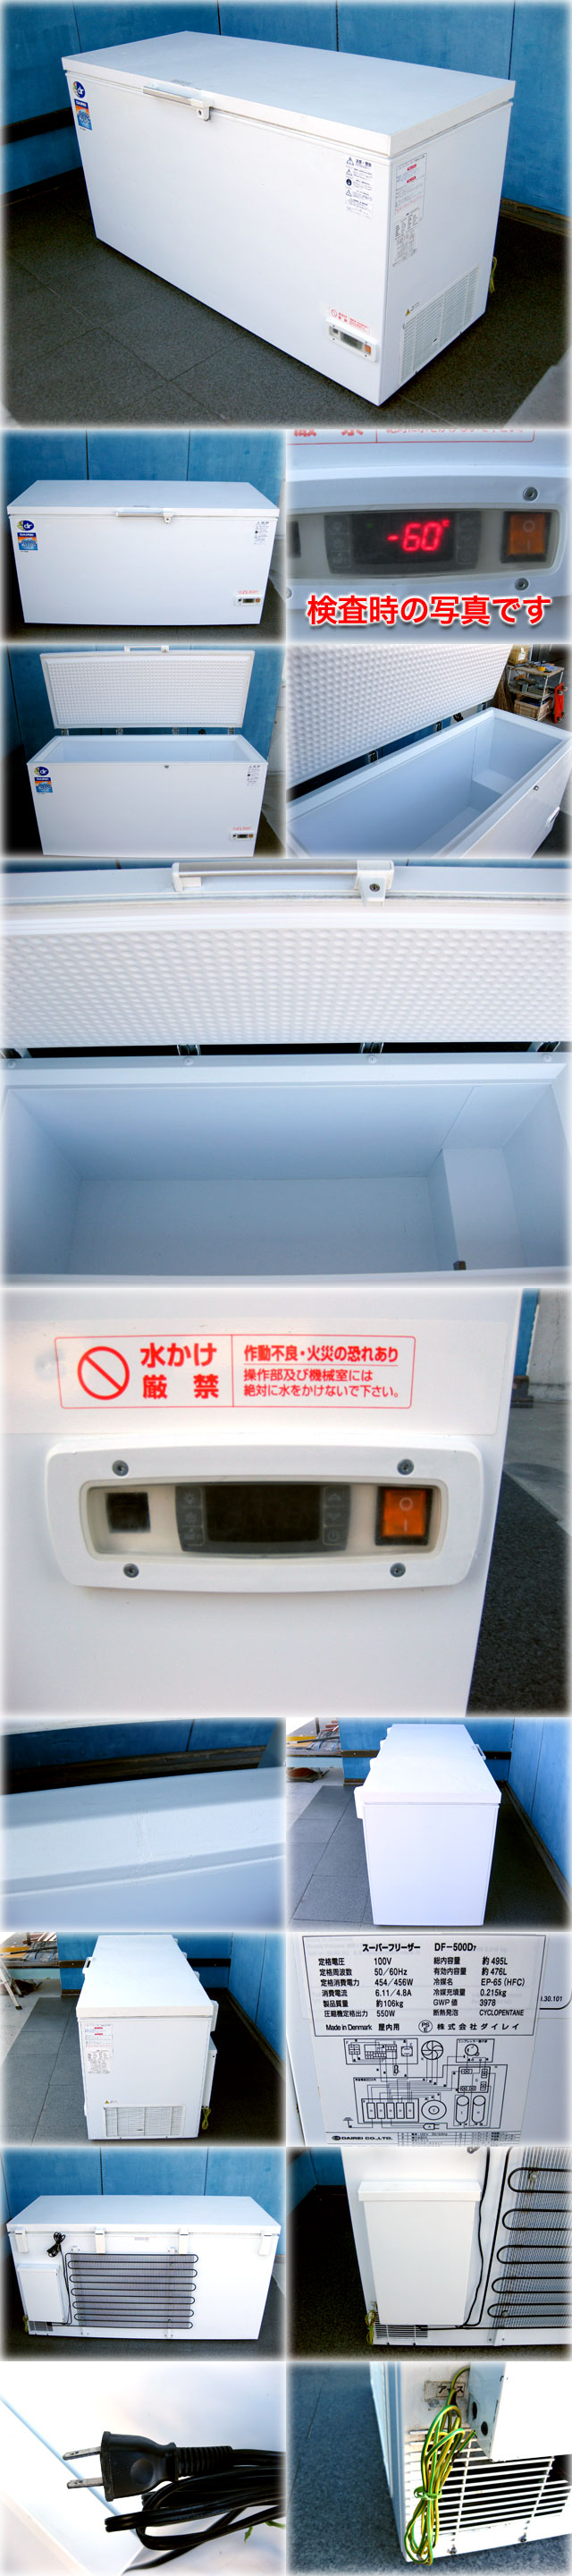 HOTお買い得ダイレイ 超低温冷凍ストッカー(スーパーフリーザー) DF-500D7 1650x750x890mm 476L -60℃タイプ 上開き 保証有 冷凍庫